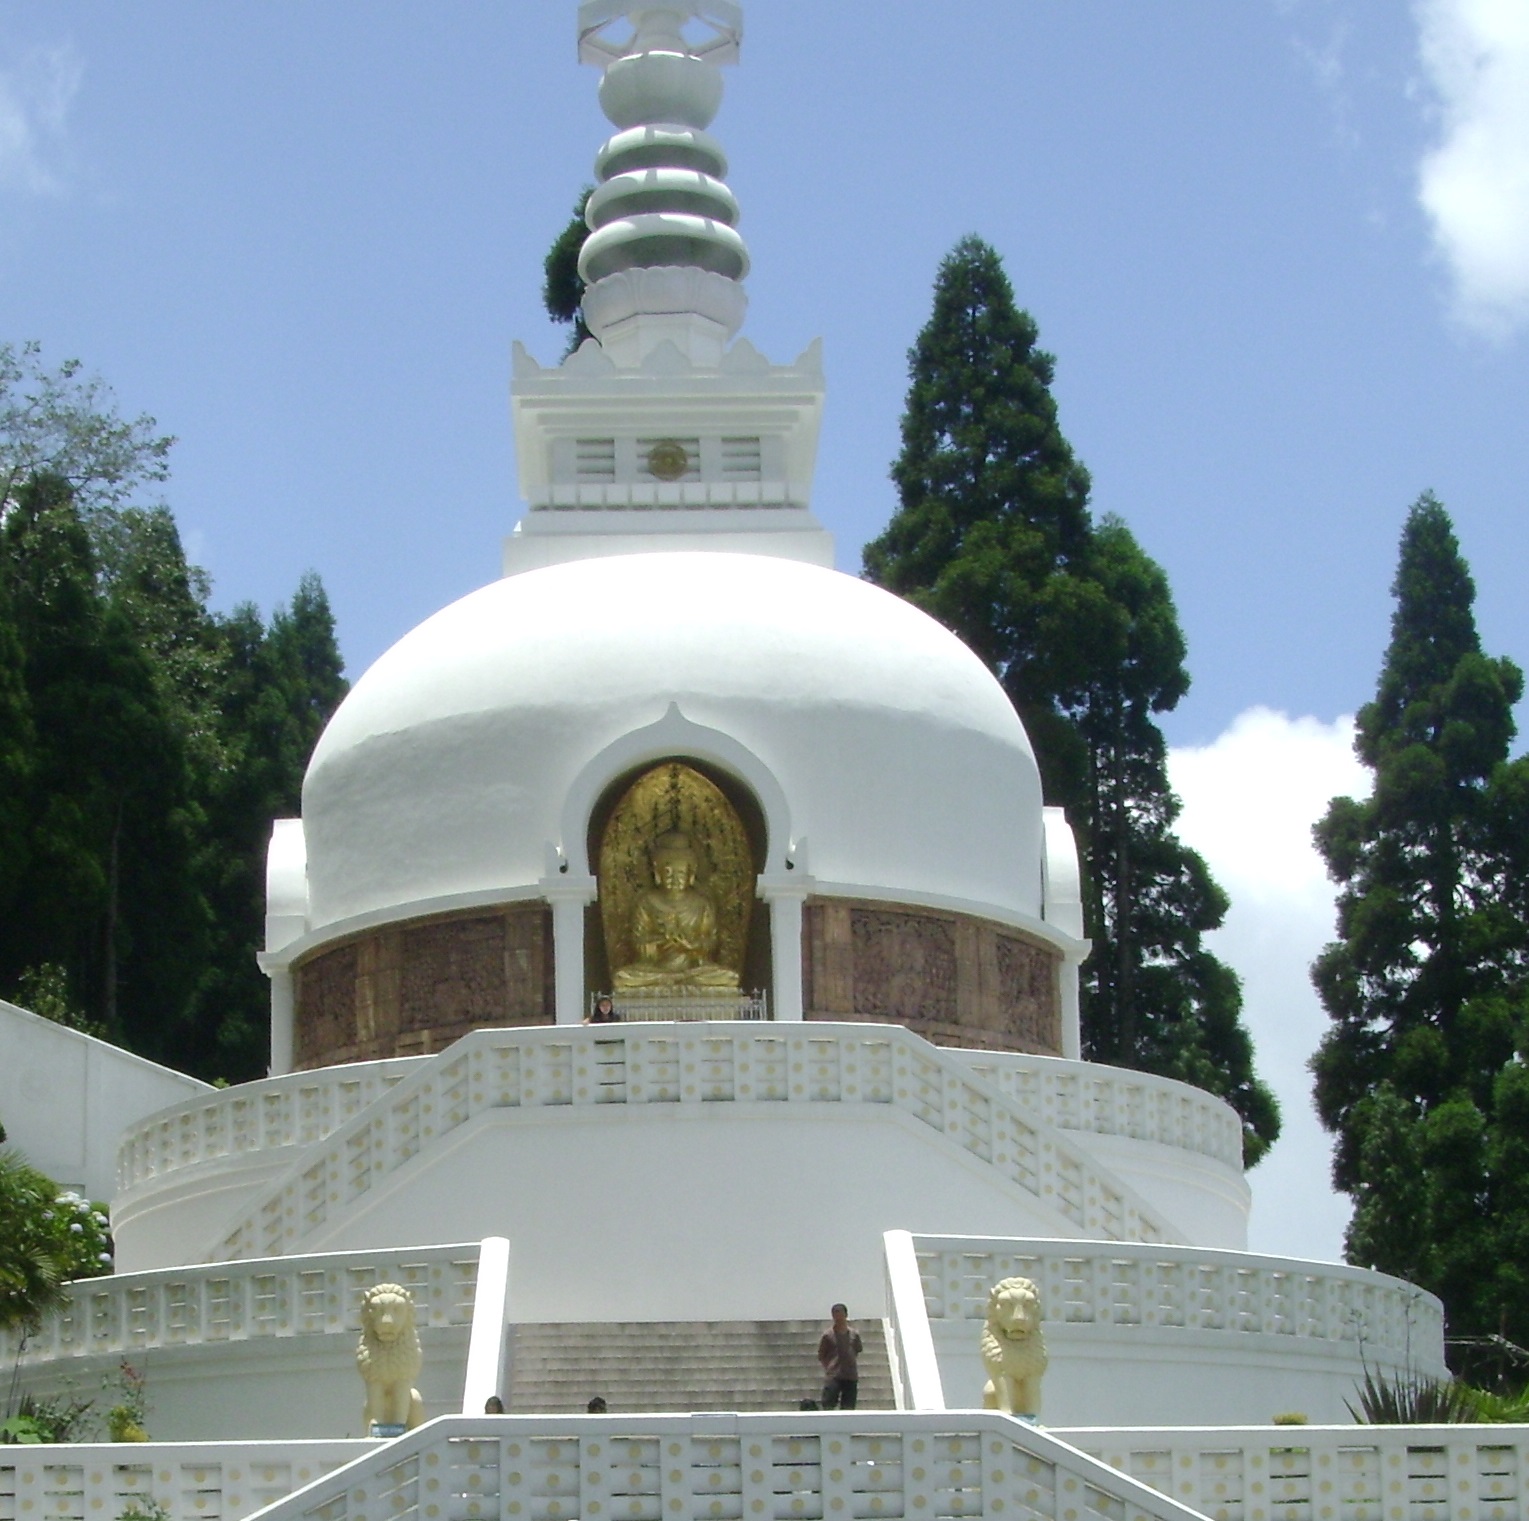 Peach Pagoda